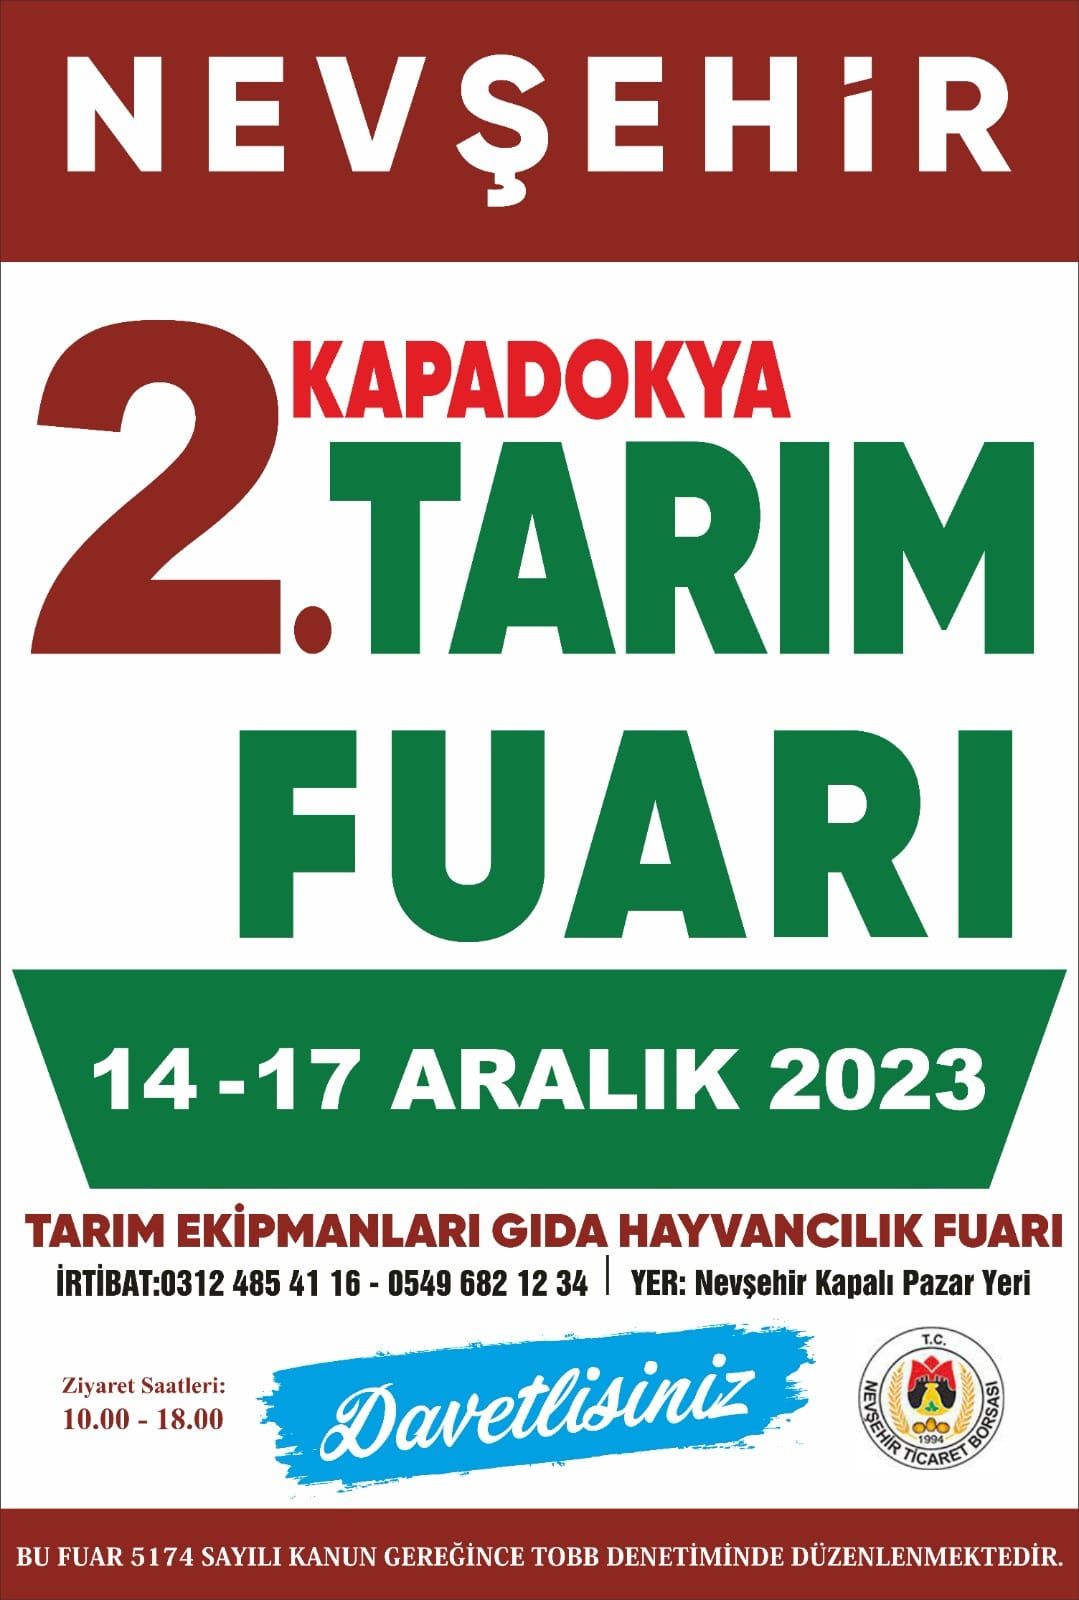 nevşehir-tarım-fuarı-2-nevagri-16-aralık-2023-1